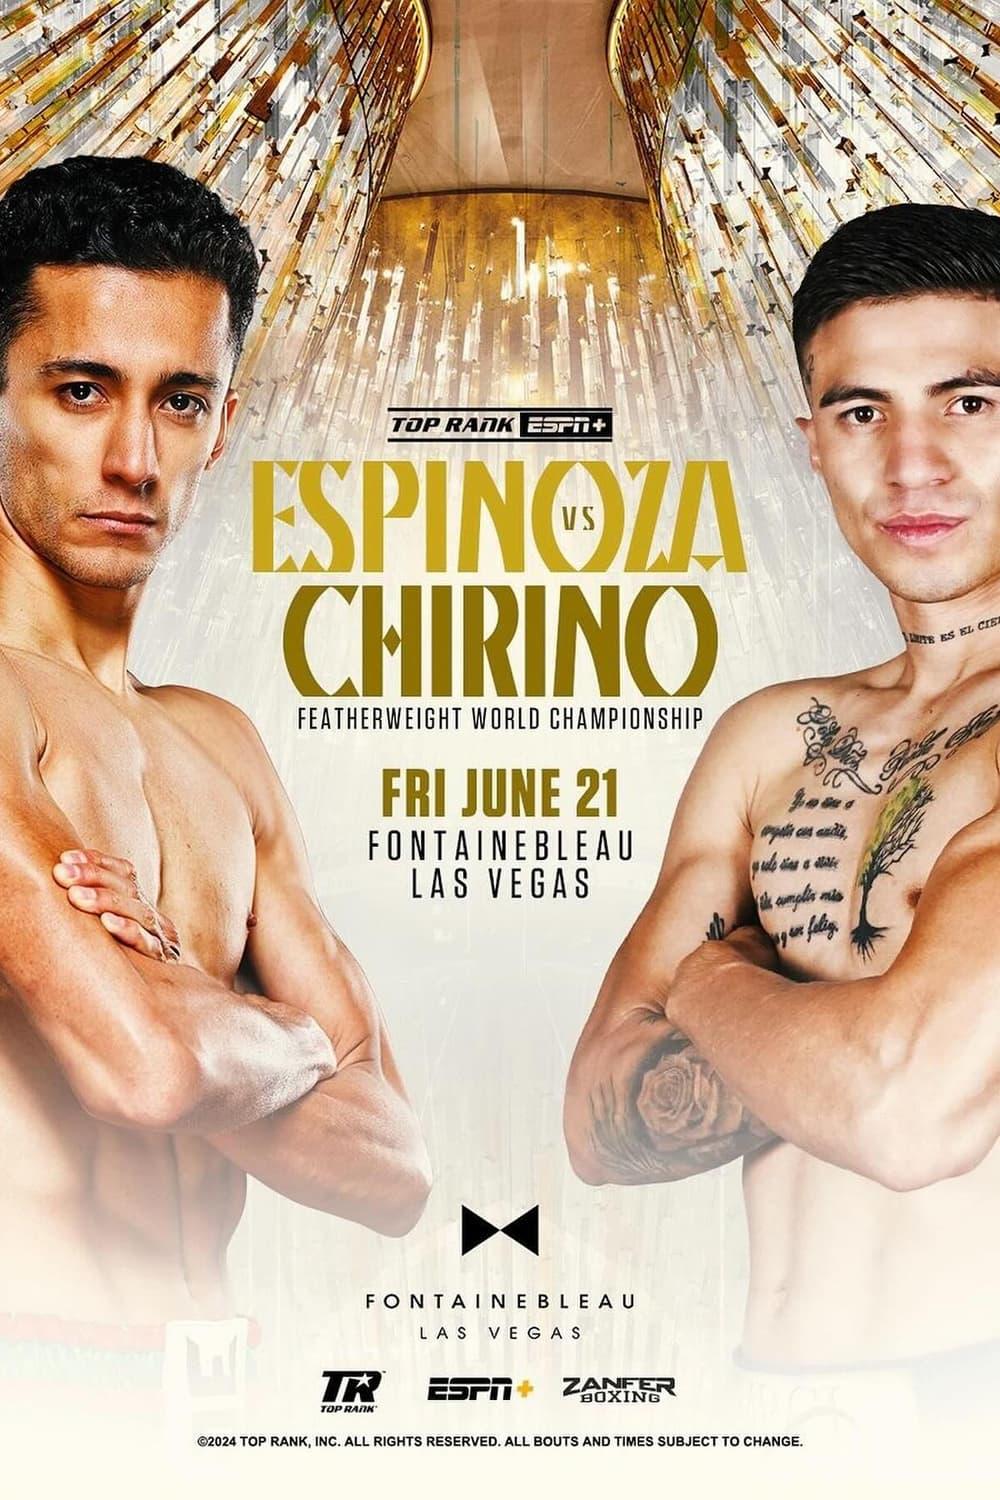 Rafael Espinoza vs. Sergio Chirino poster